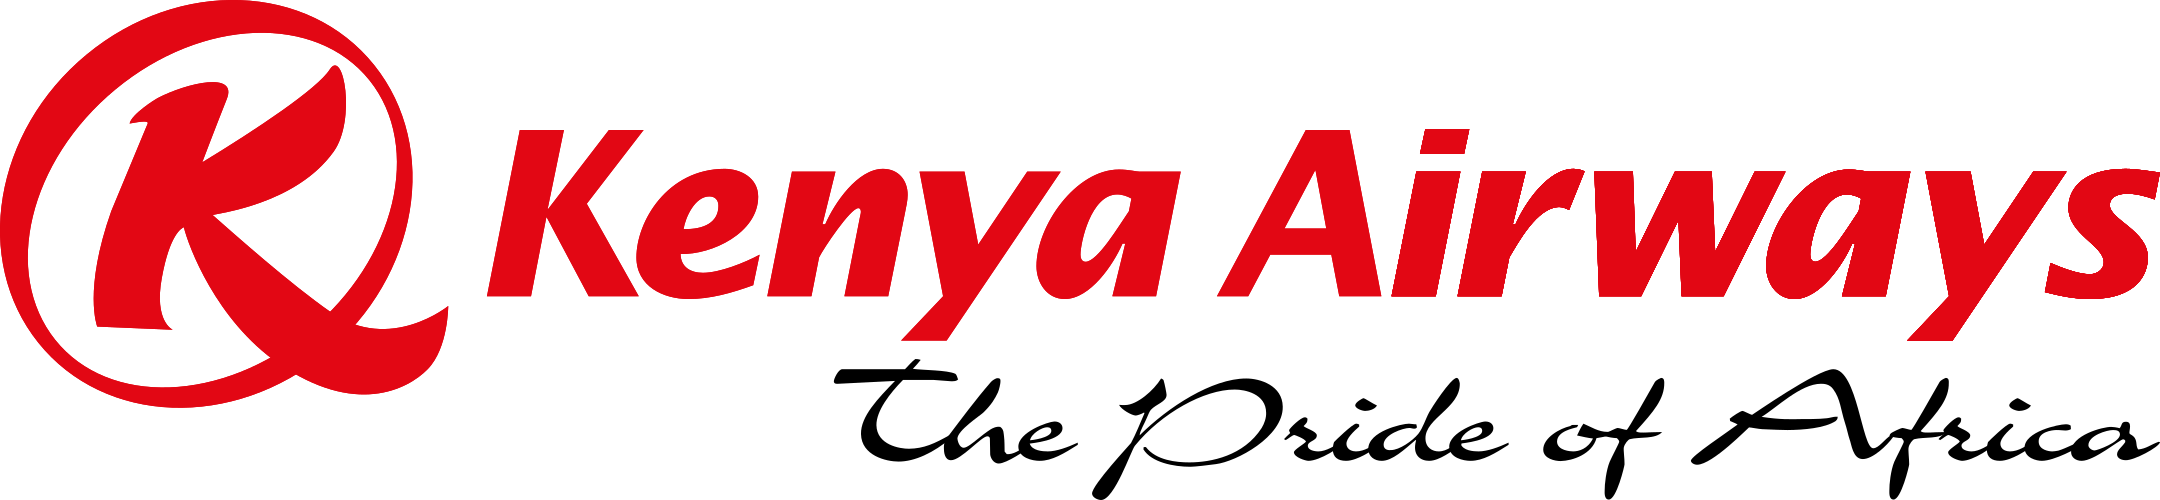 kenya airways logo 2 - Kenya Airways Logo